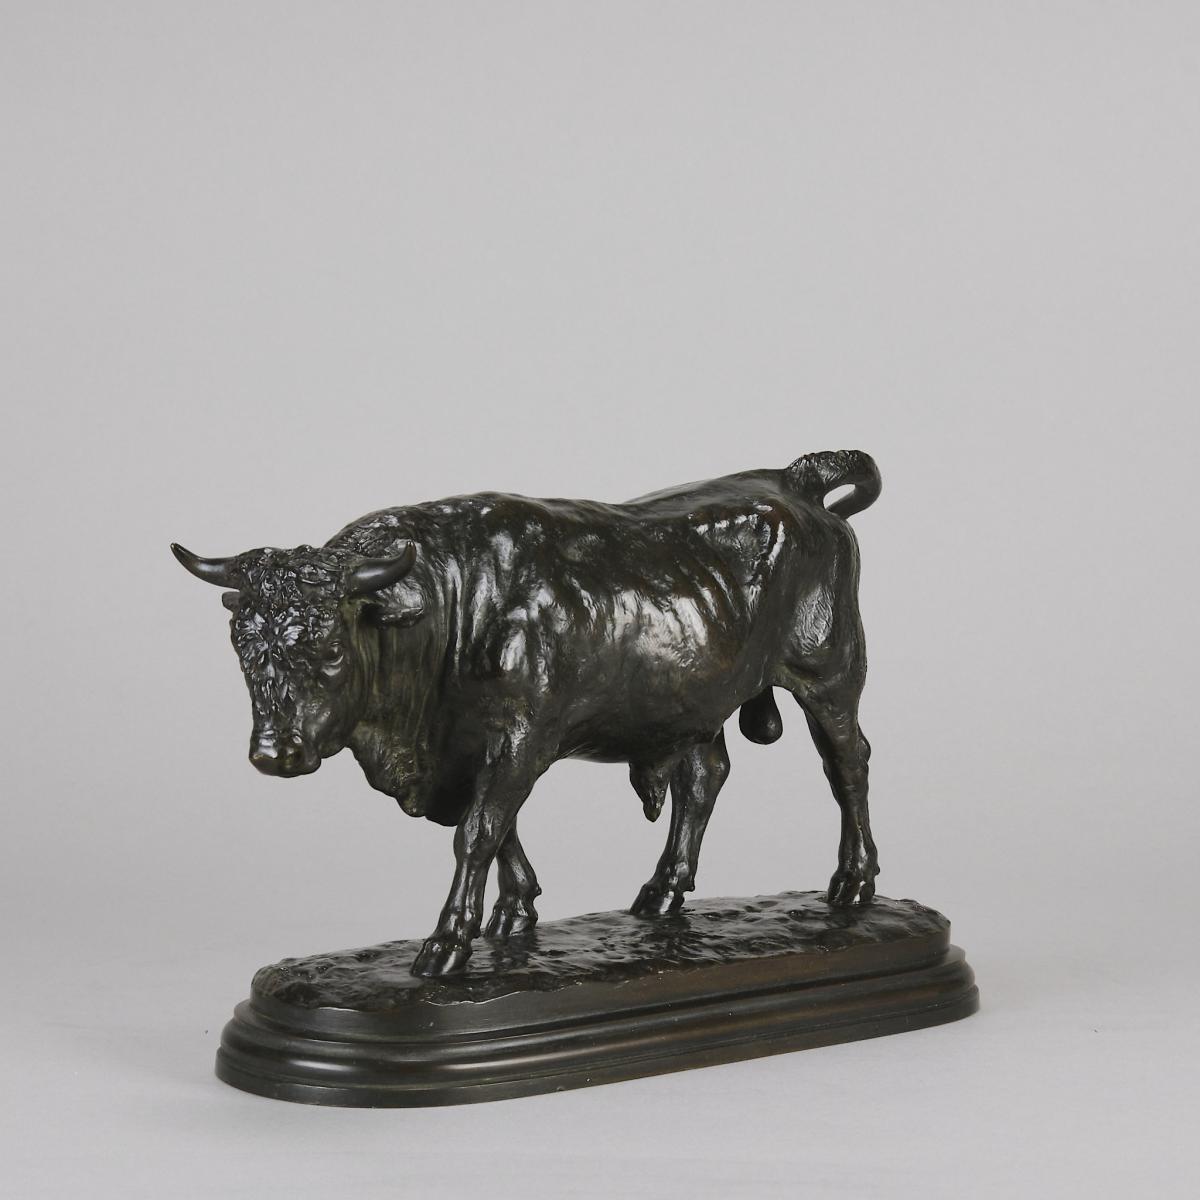 French Art Nouveau Animalier bronze entitled "Taureau Debout" by Rosa Bonheur - Circa 1870